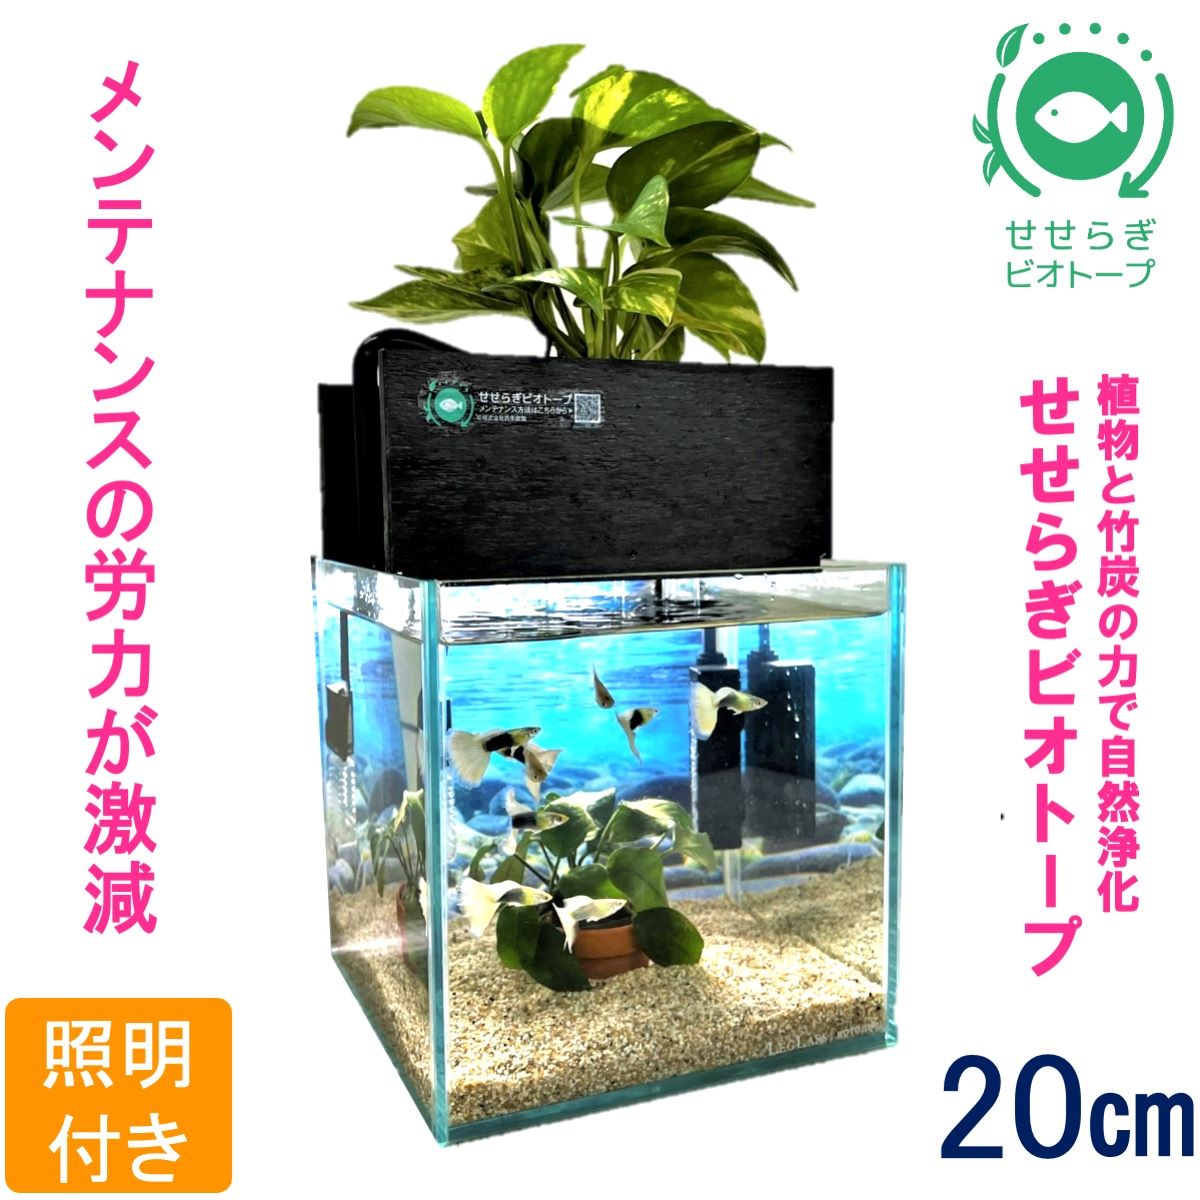 水槽セット せせらぎビオトープ 20cm型照明 植物 魚 (黒・グレー)